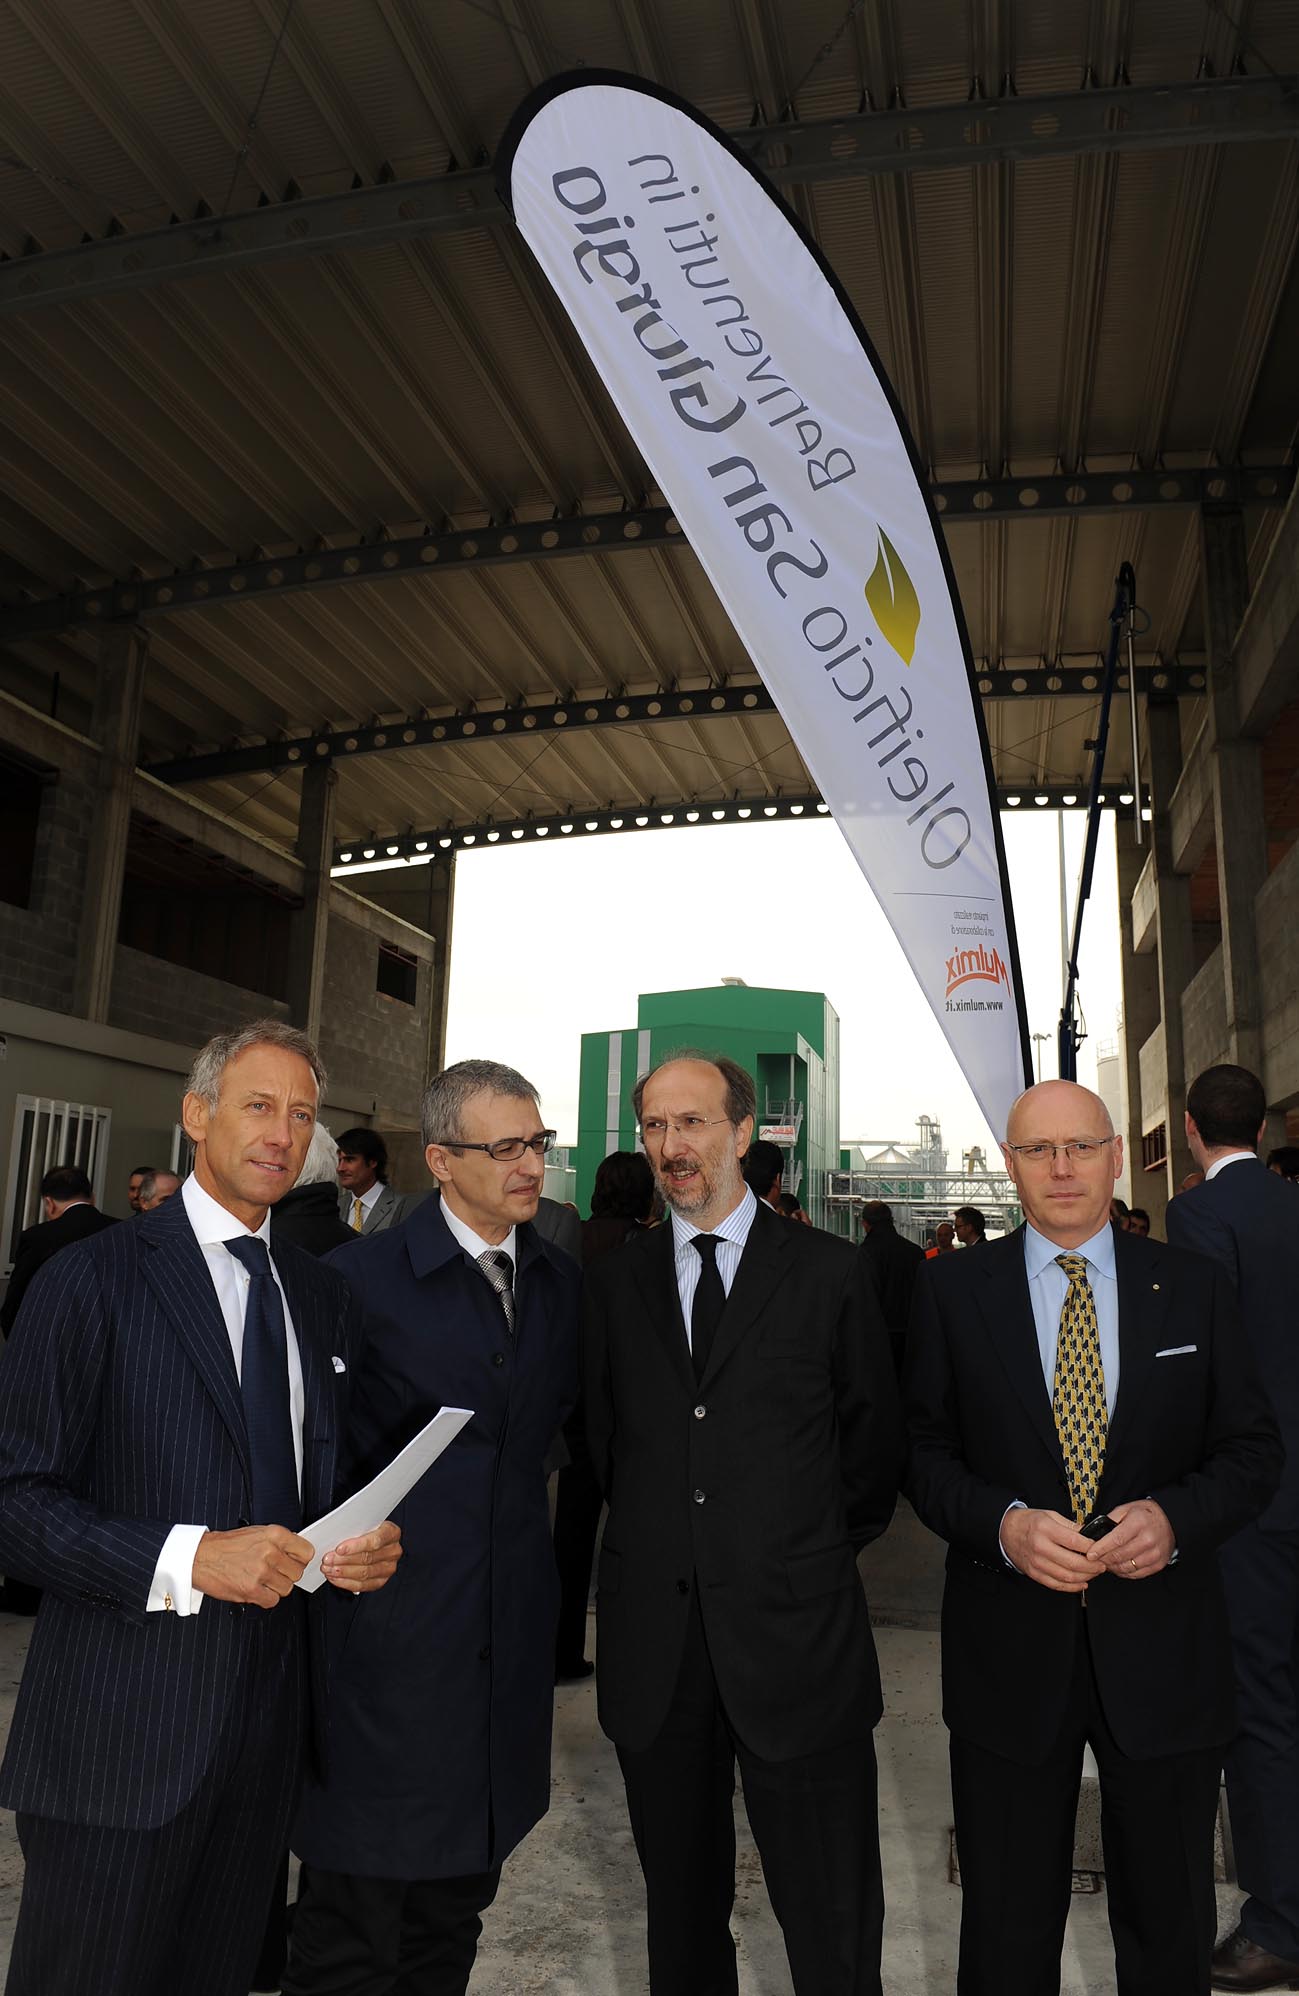 Riccardo Riccardi (Assessore Trasporti) ed altre autorità durante l’inaugurazione del nuovo Oleificio San Giorgio. (S.Giorgio di Nogaro, 24/04/10)